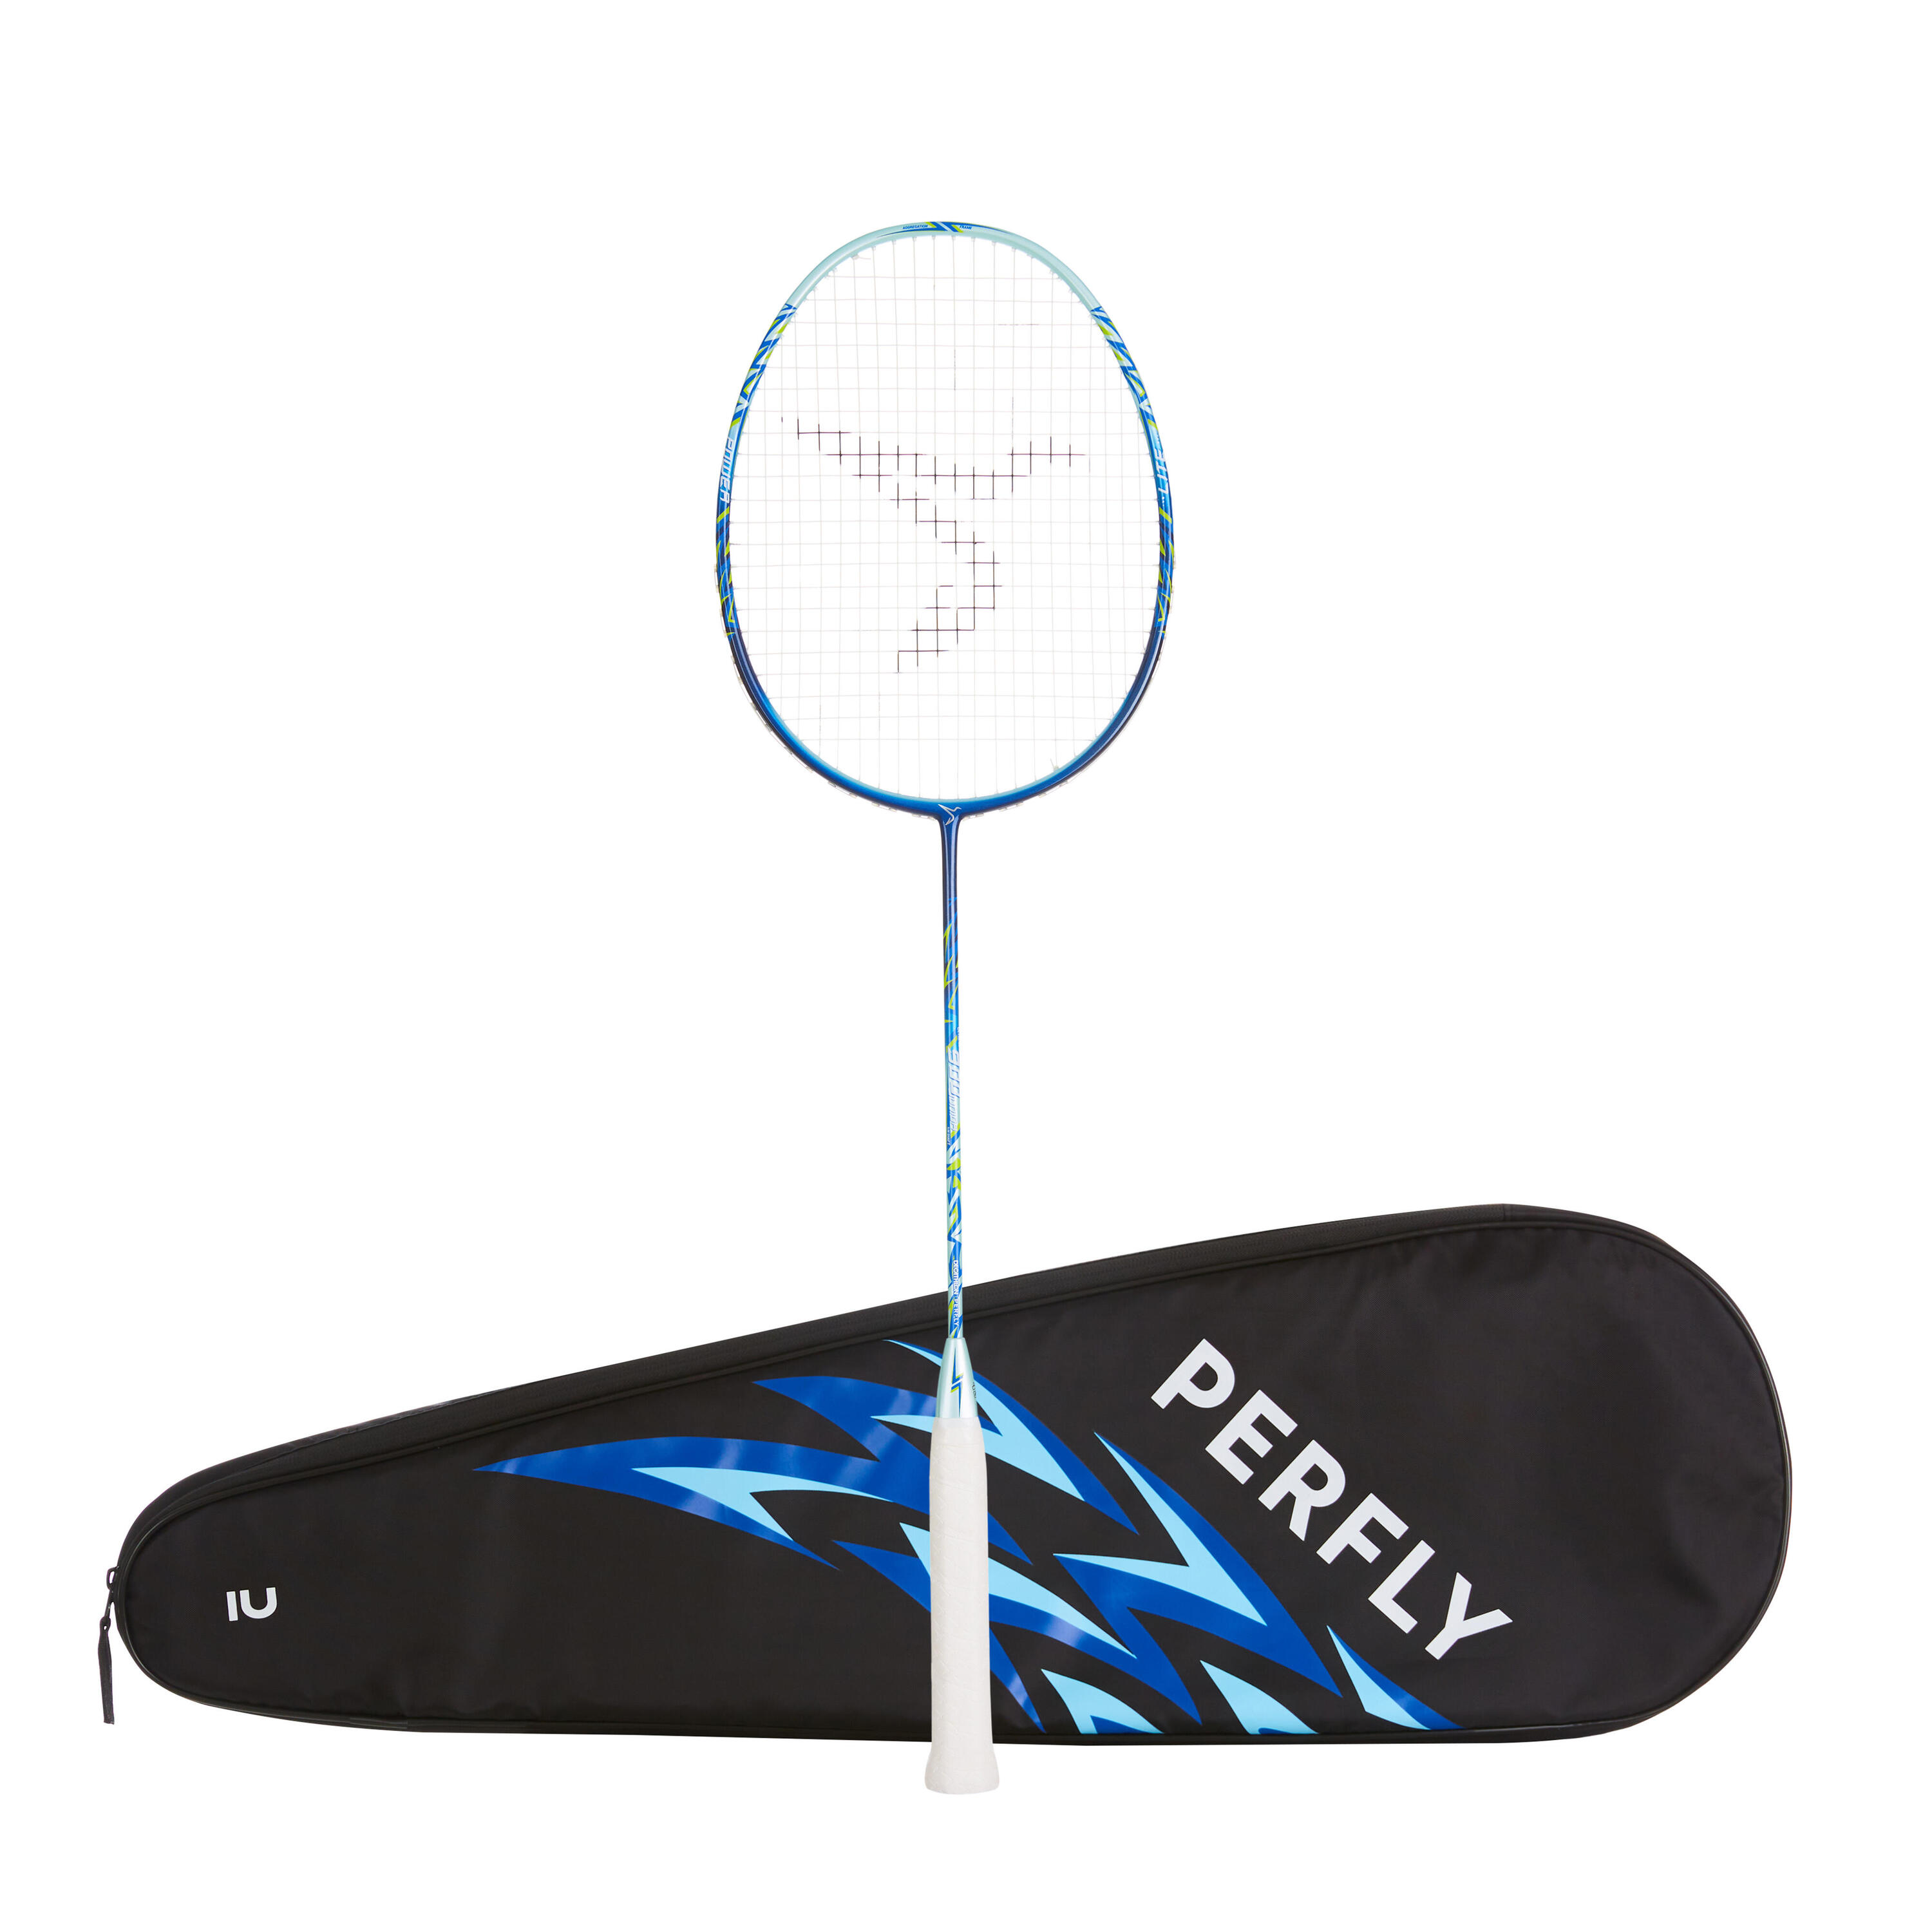 Badminton school equipment